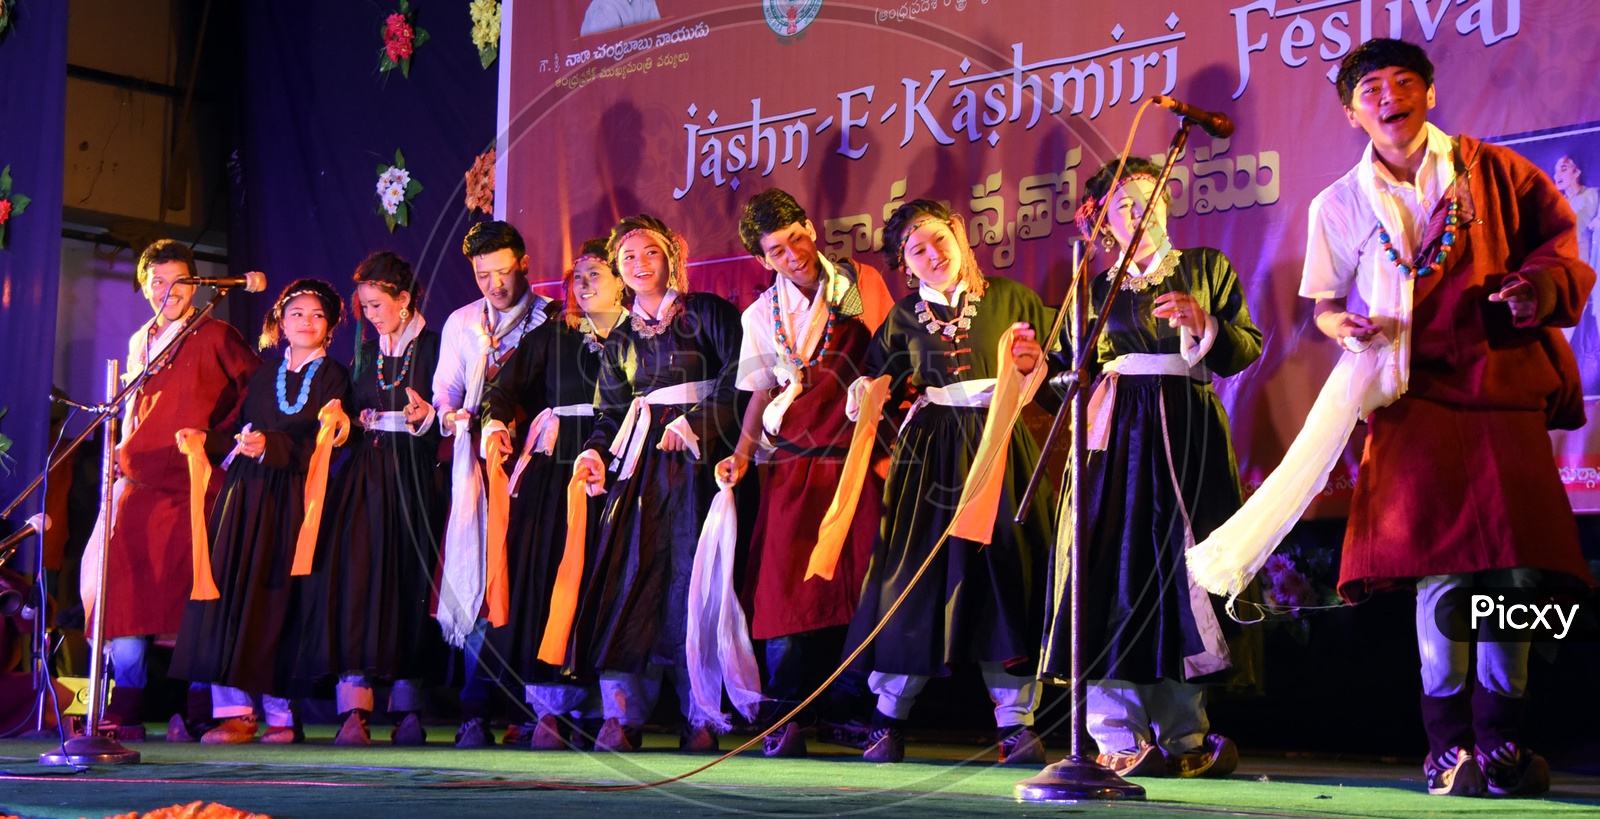 Kashmiri People performing on stage